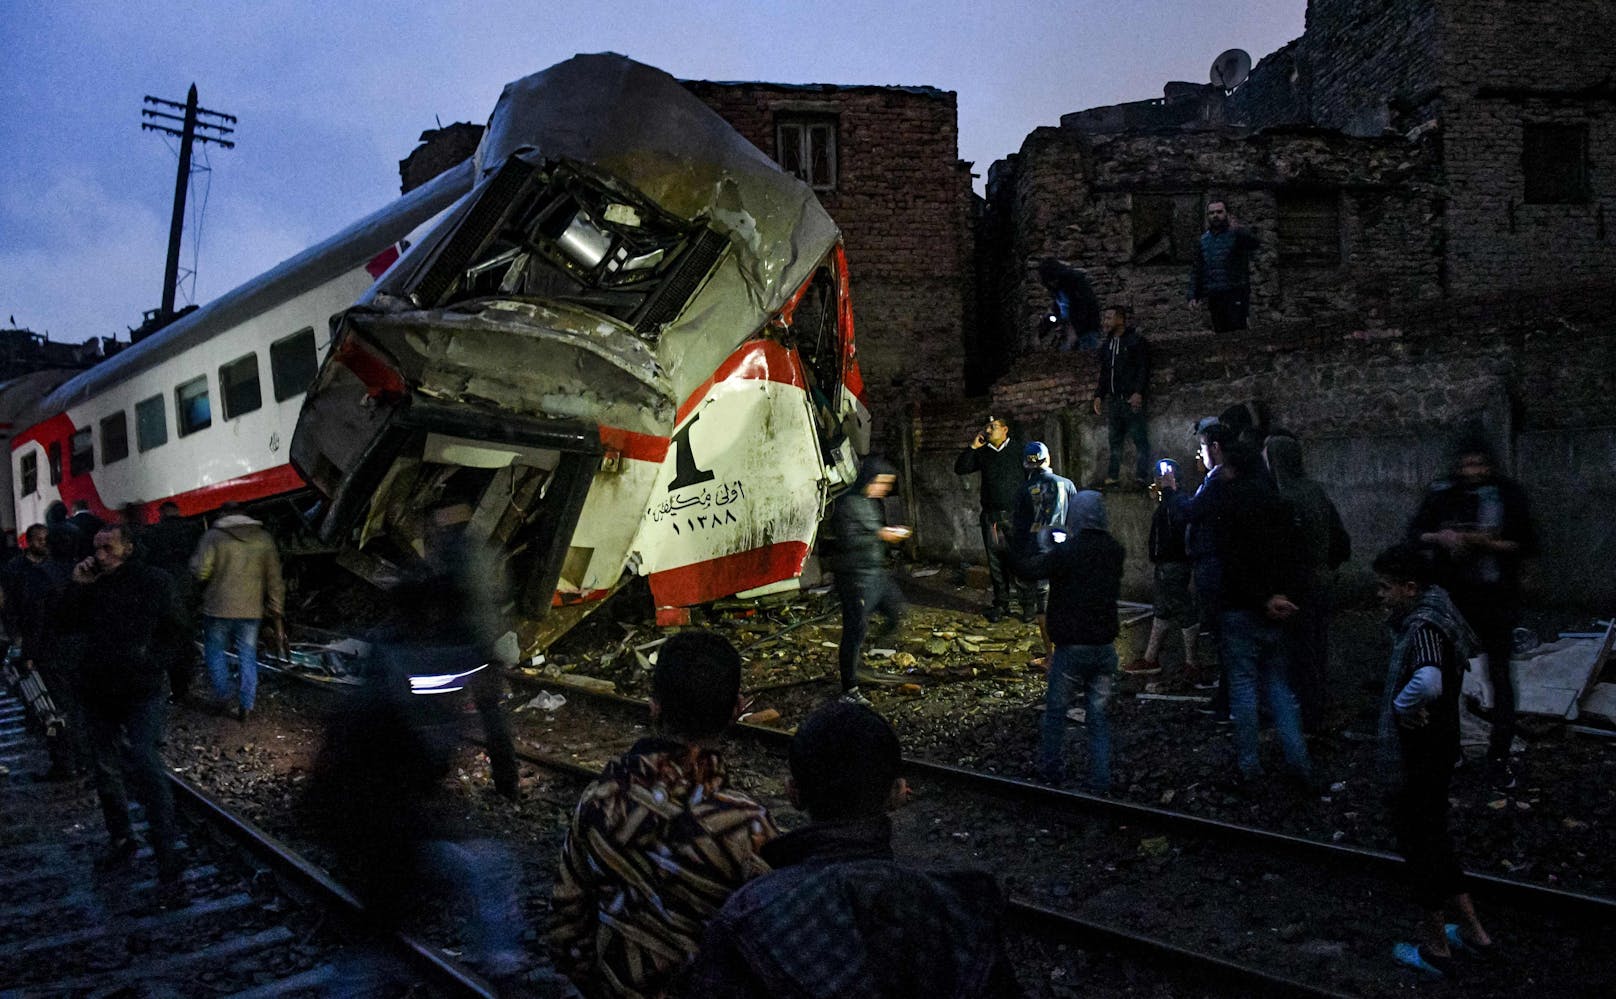 In Ägypten kostete ein Unfall mit zwei beteiligten Zügen mindestens 32 Menschen das Leben. (Archivbild)